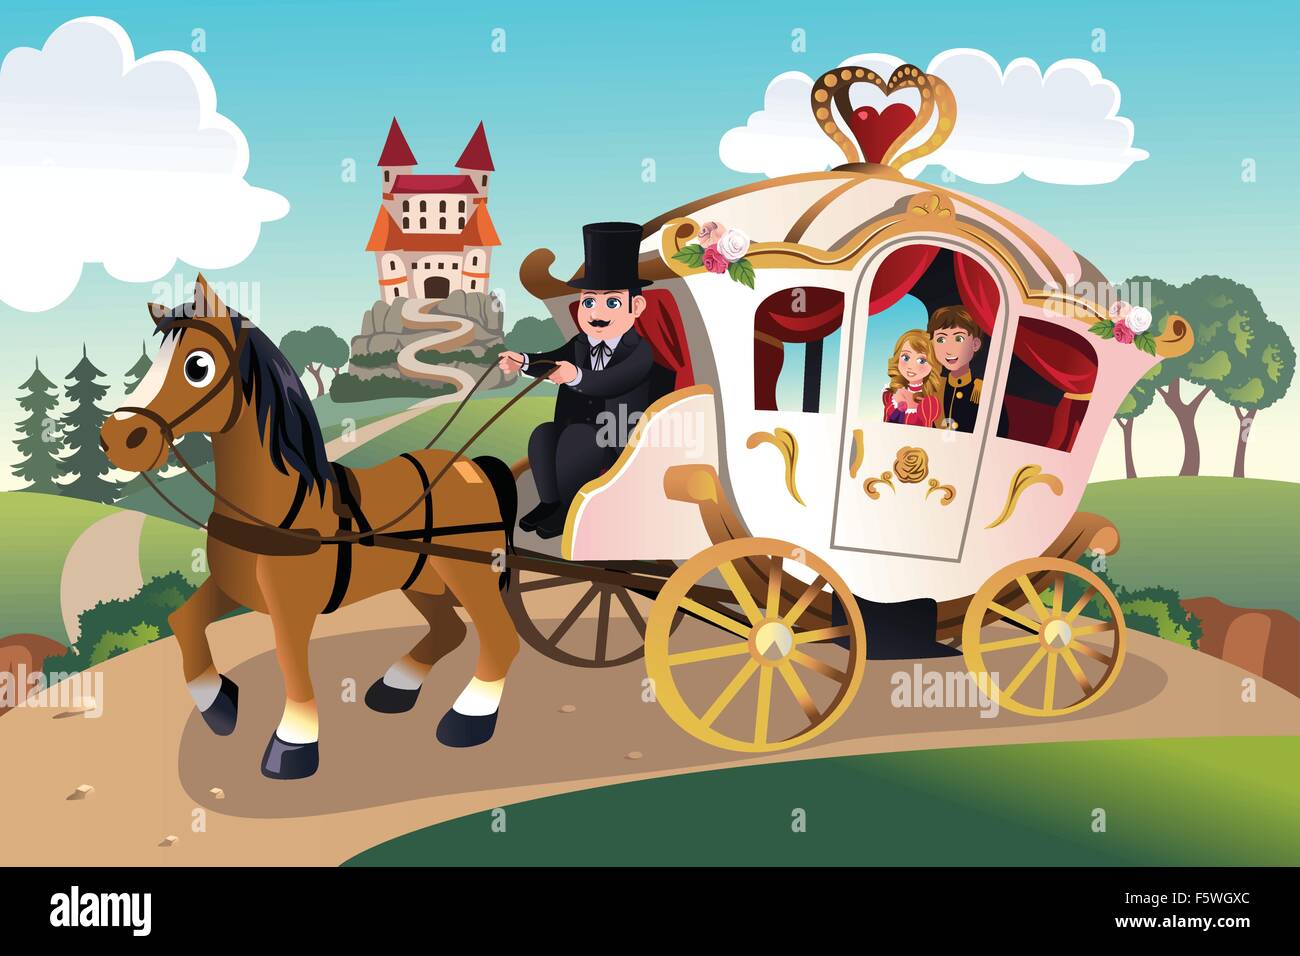 Un vecteur illustration de prince et princesse dans un wagon tiré de cheval Illustration de Vecteur